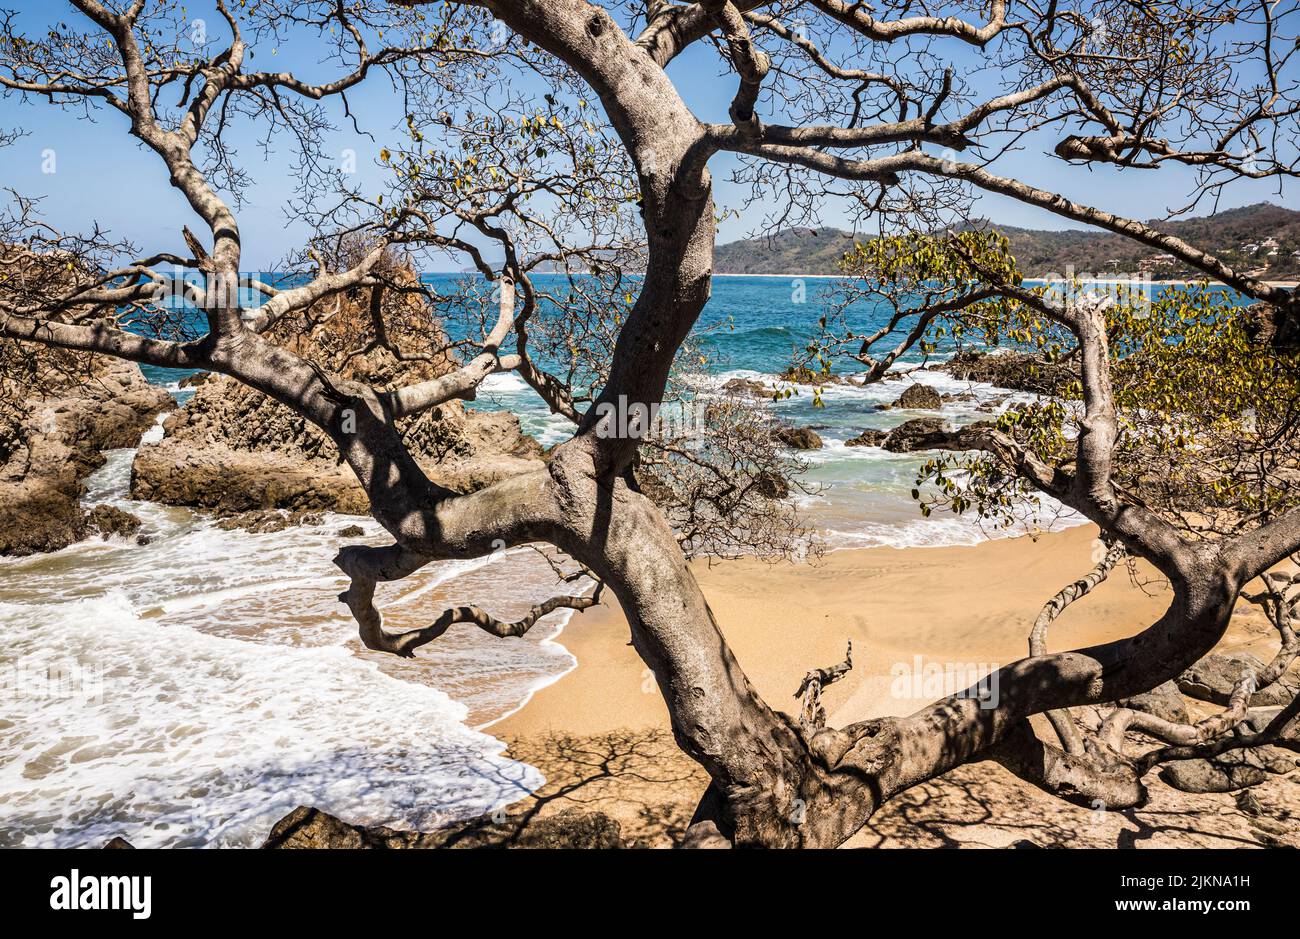 A rocky pocket beach area just north of Playa de los Muertos in Sayulita, Nayarit, Mexico. Stock Photo